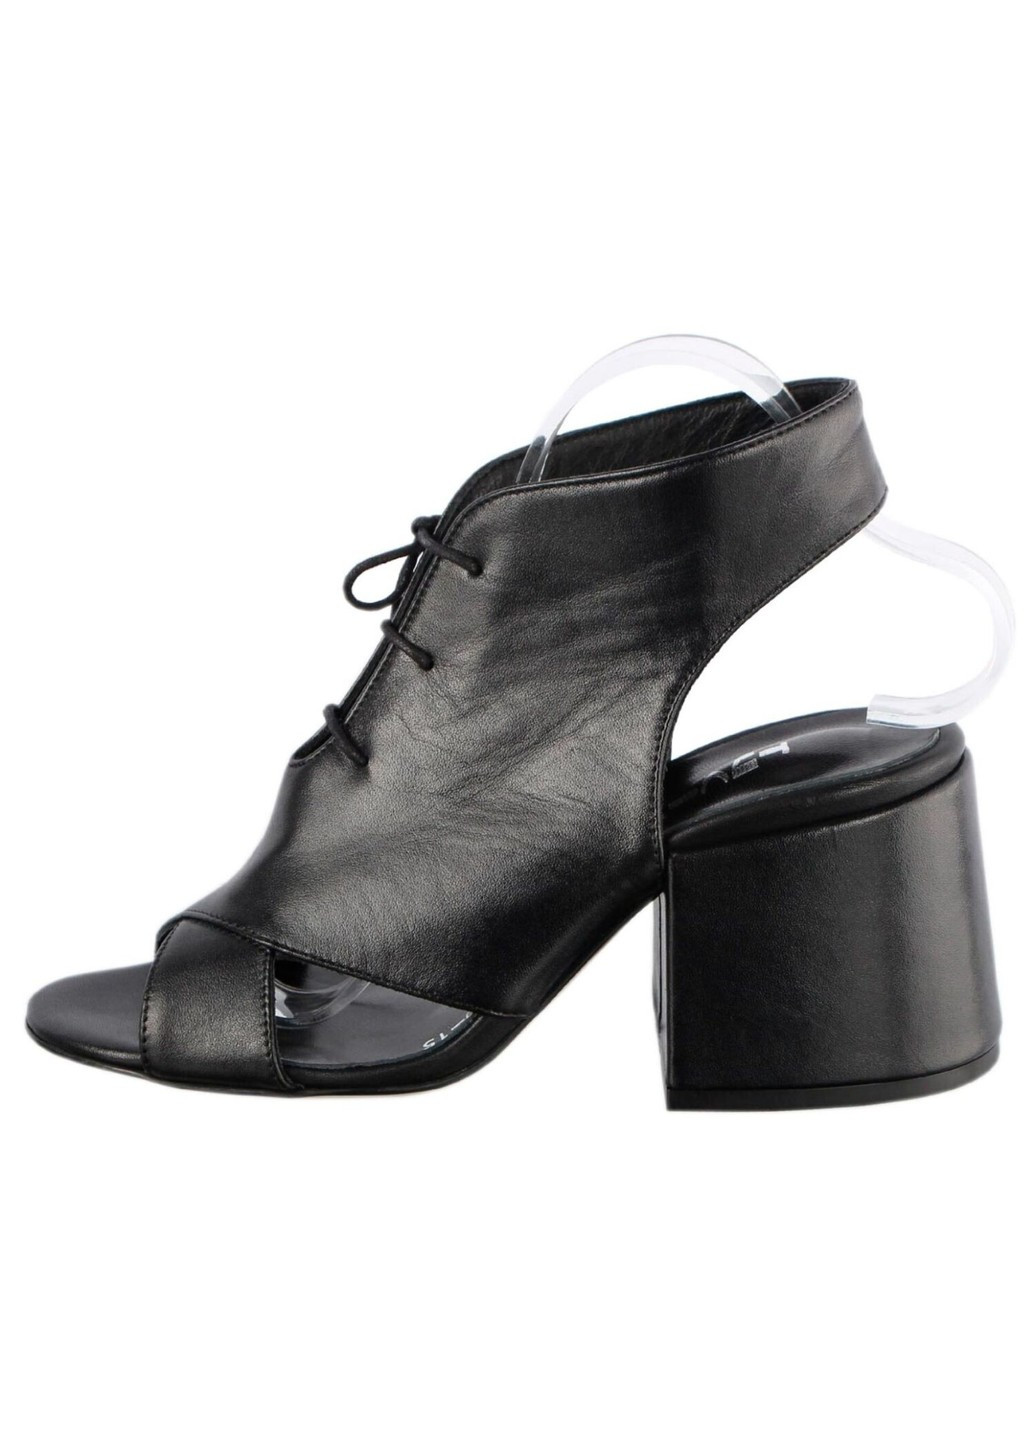 Черные женские босоножки на каблуке 195953, черный, 40, 2999860380330 Tucino на шнурках